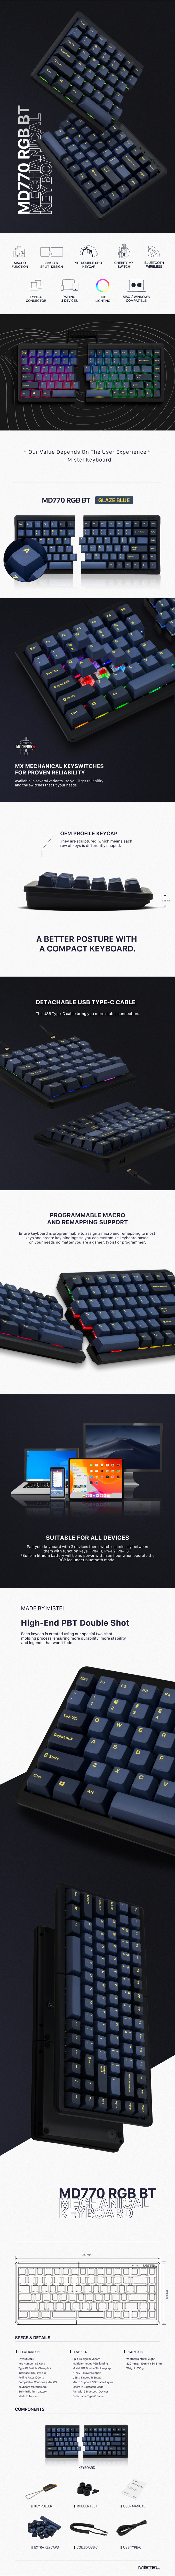 BAROCCO MD770 RGB BT | Mistel Keyboard